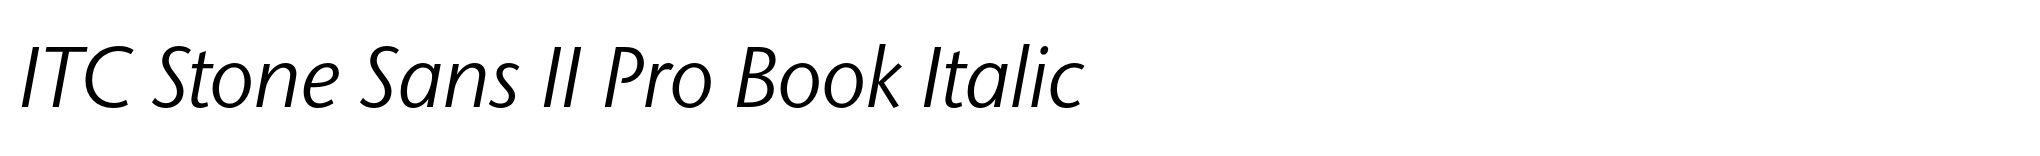 ITC Stone Sans II Pro Book Italic image